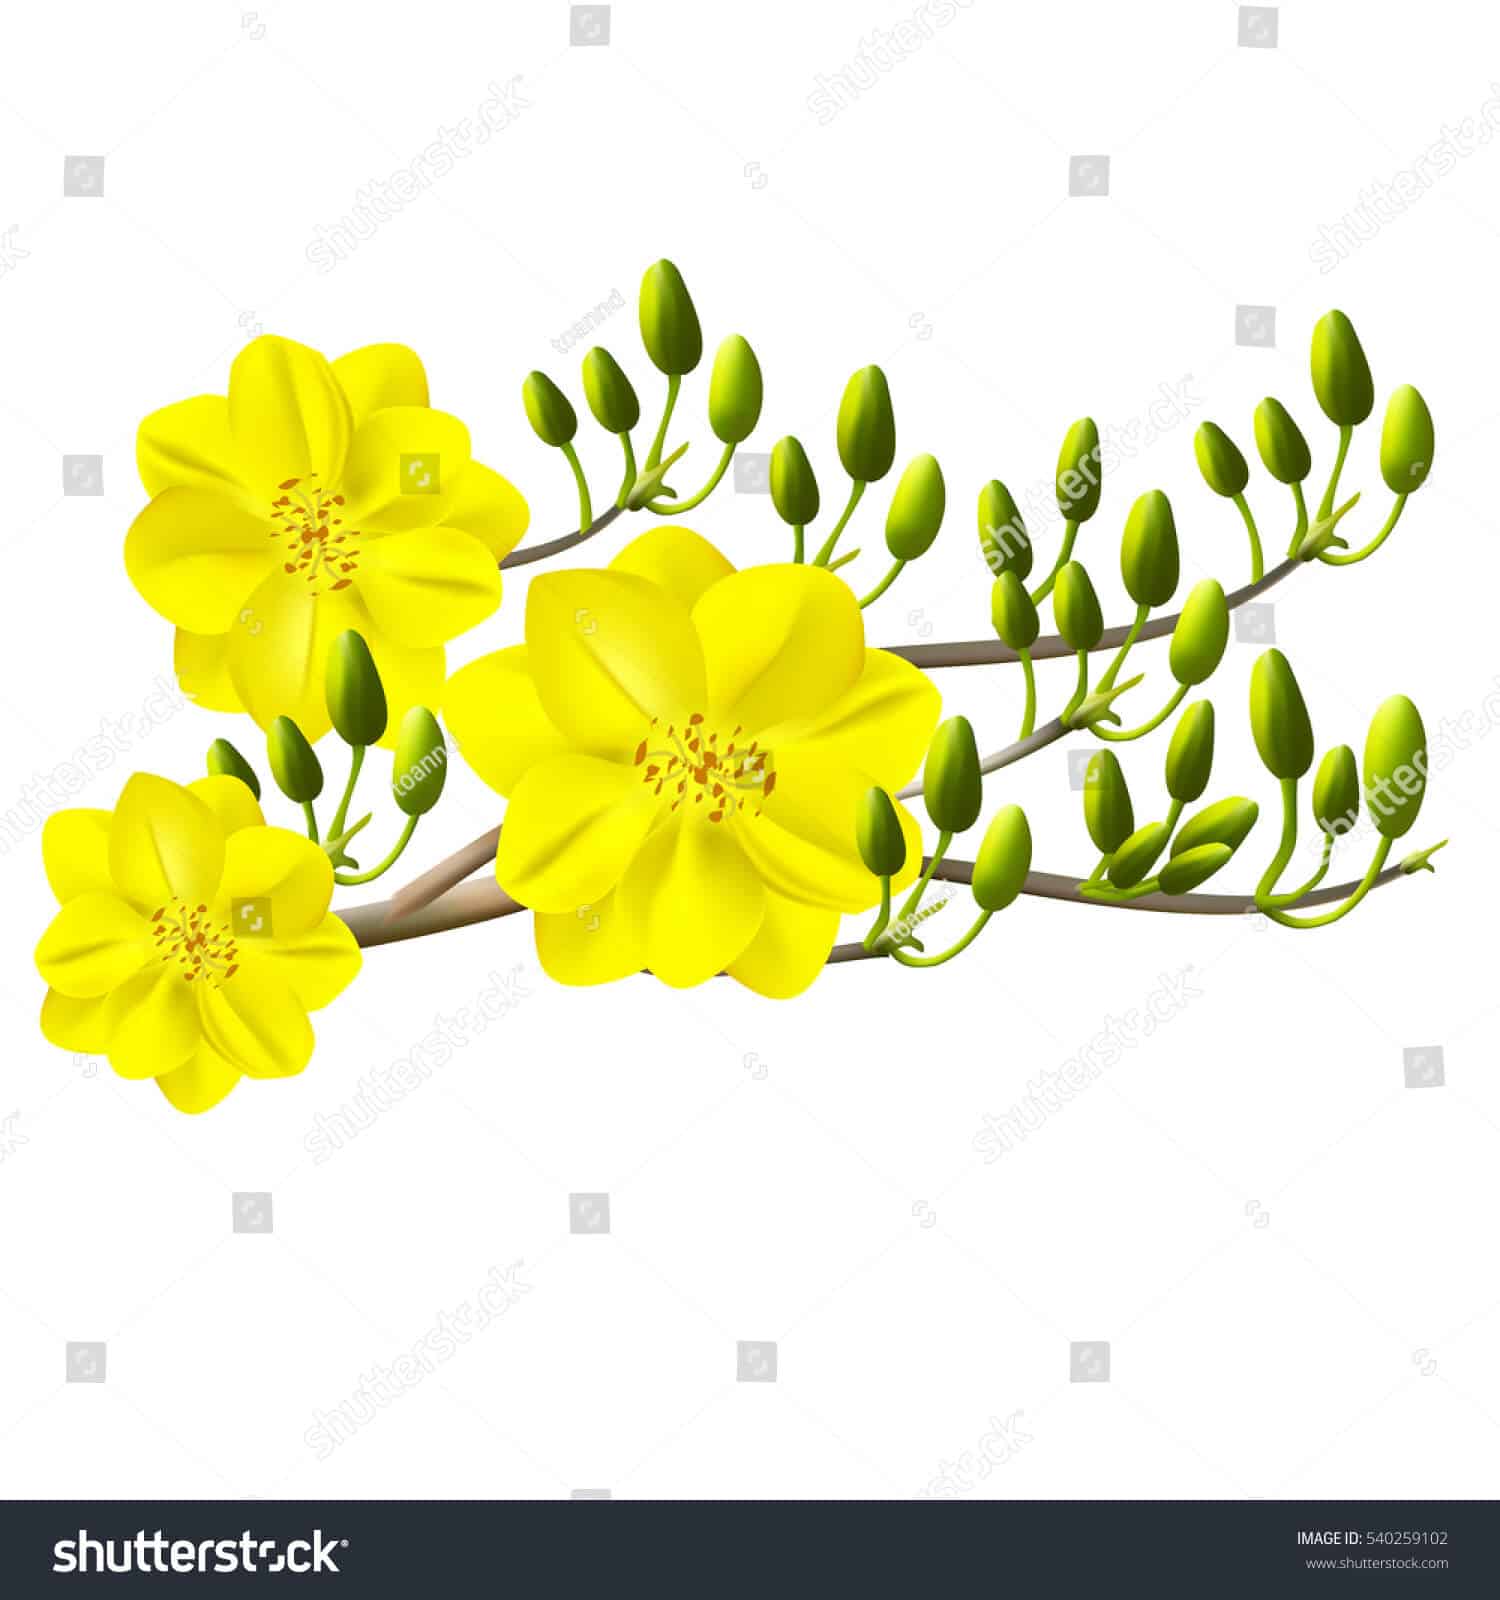 14 nghìn hình ảnh hoa mai vàng chất lượng cao trên Shutterstock